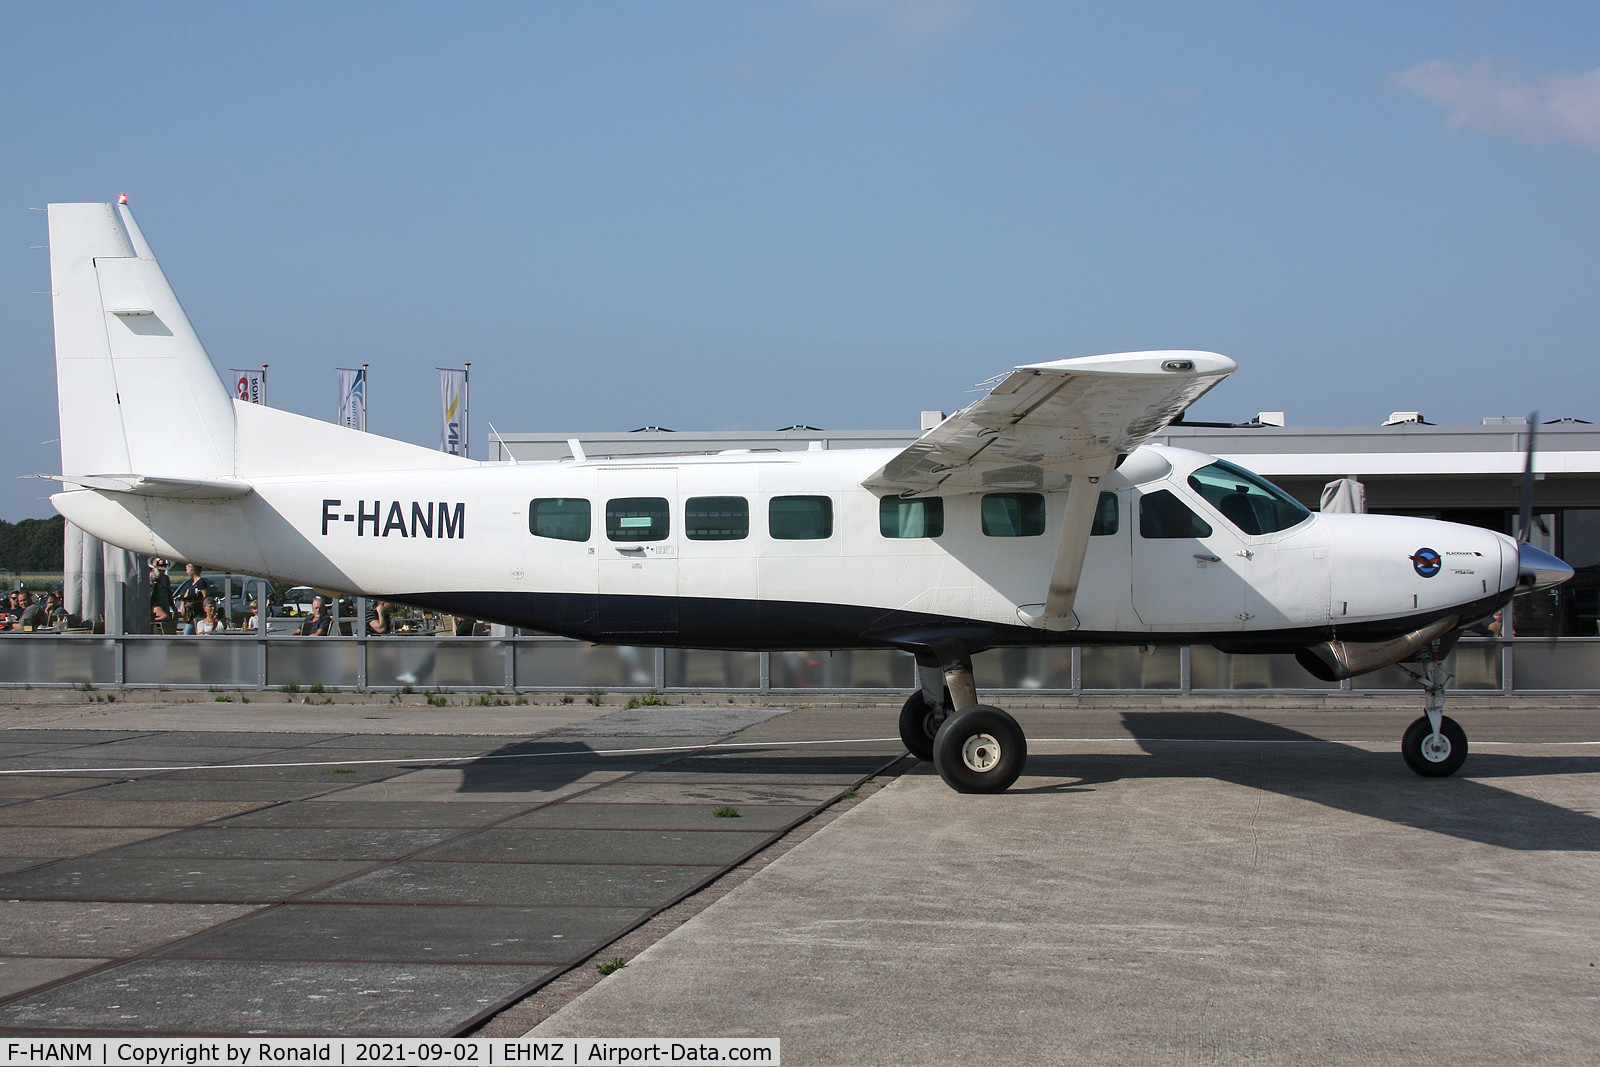 F-HANM, 1997 Cessna 208B Grand Caravan C/N 208B0640, at ehmz